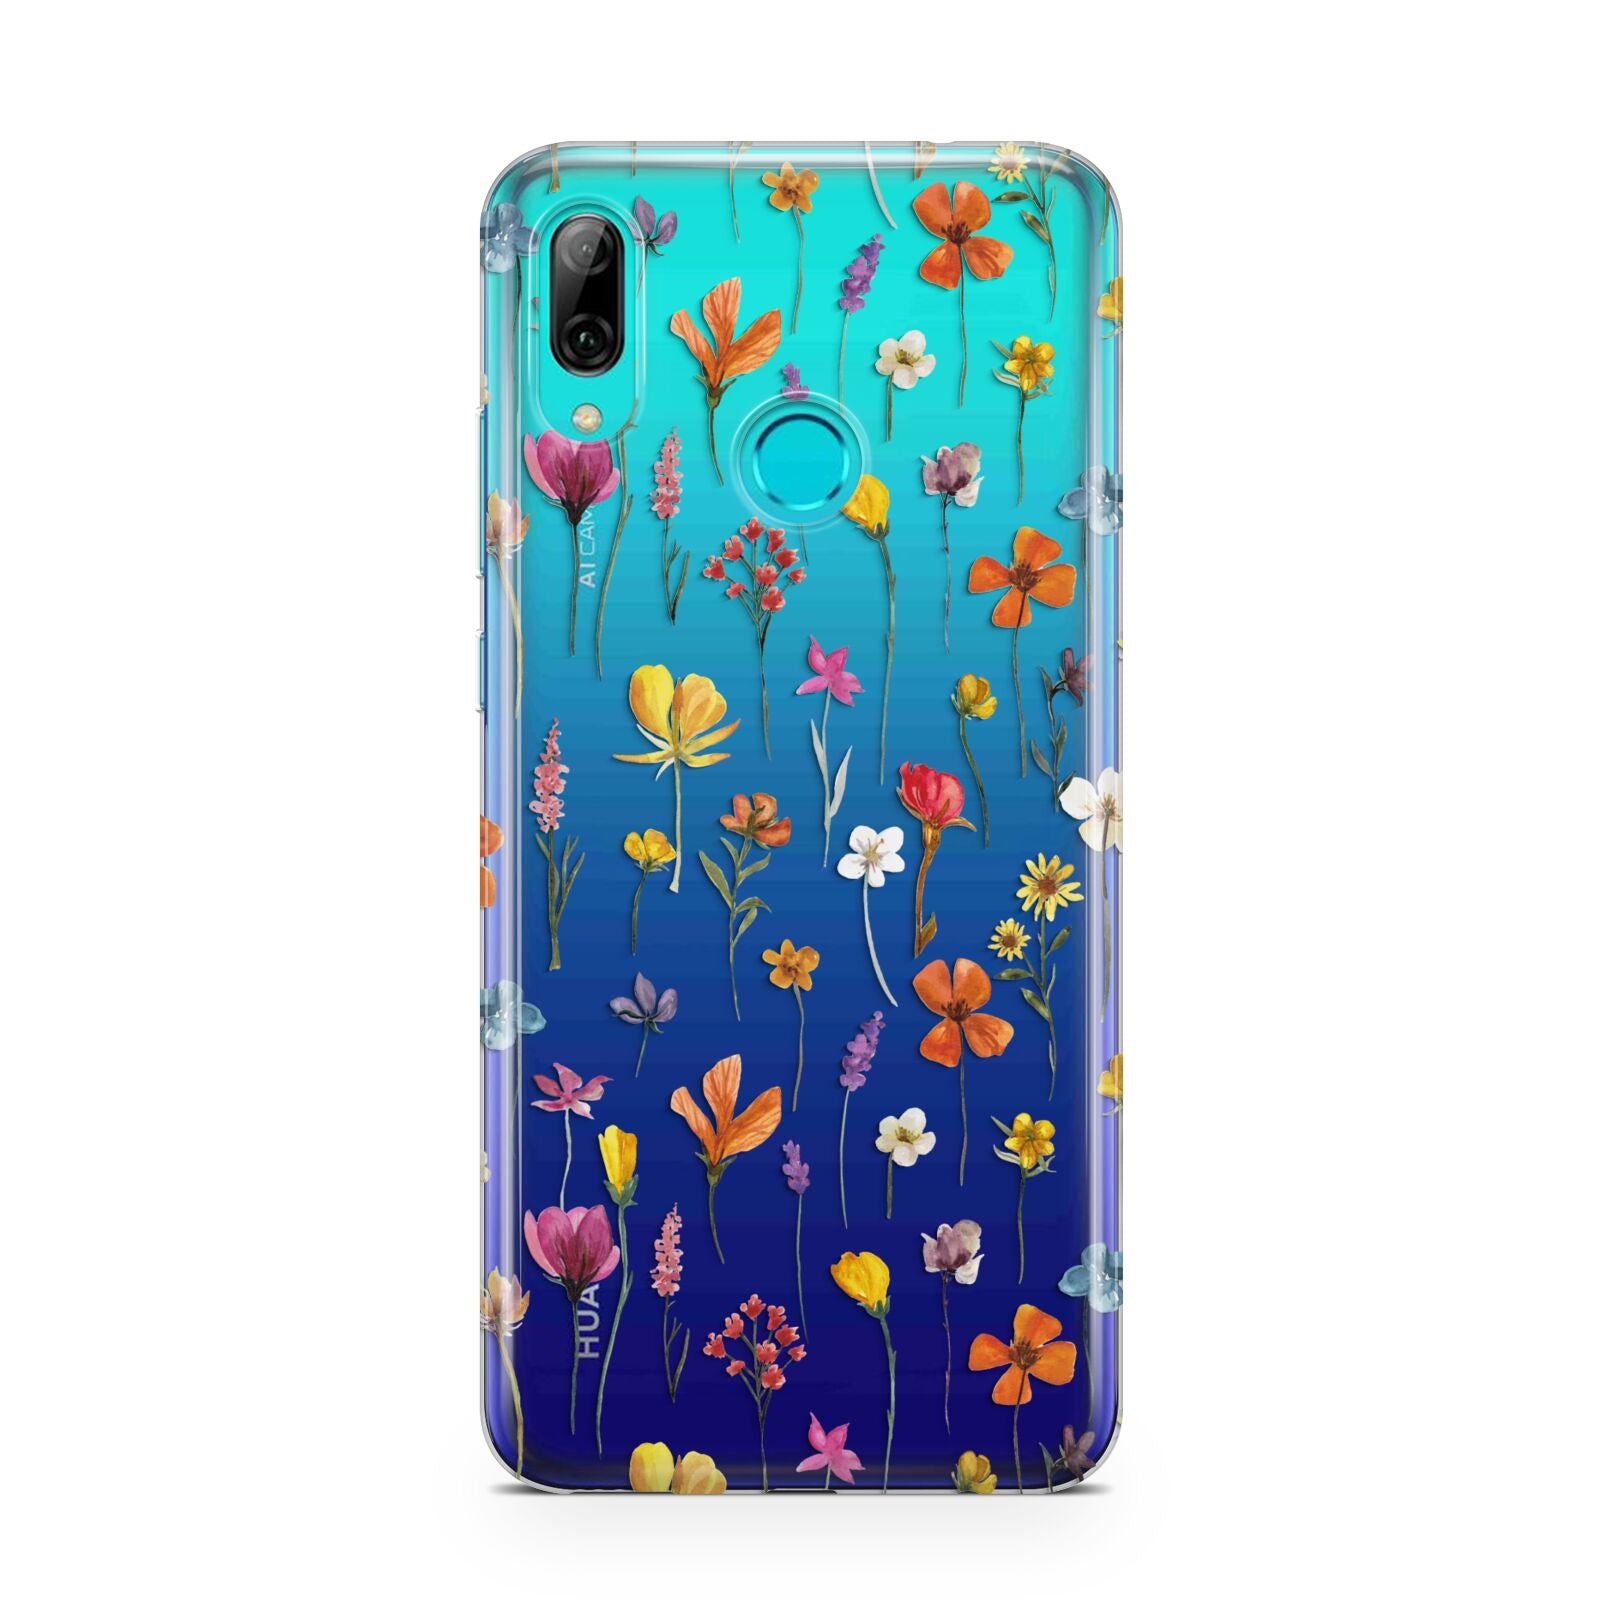 Botanical Floral Huawei P Smart 2019 Case